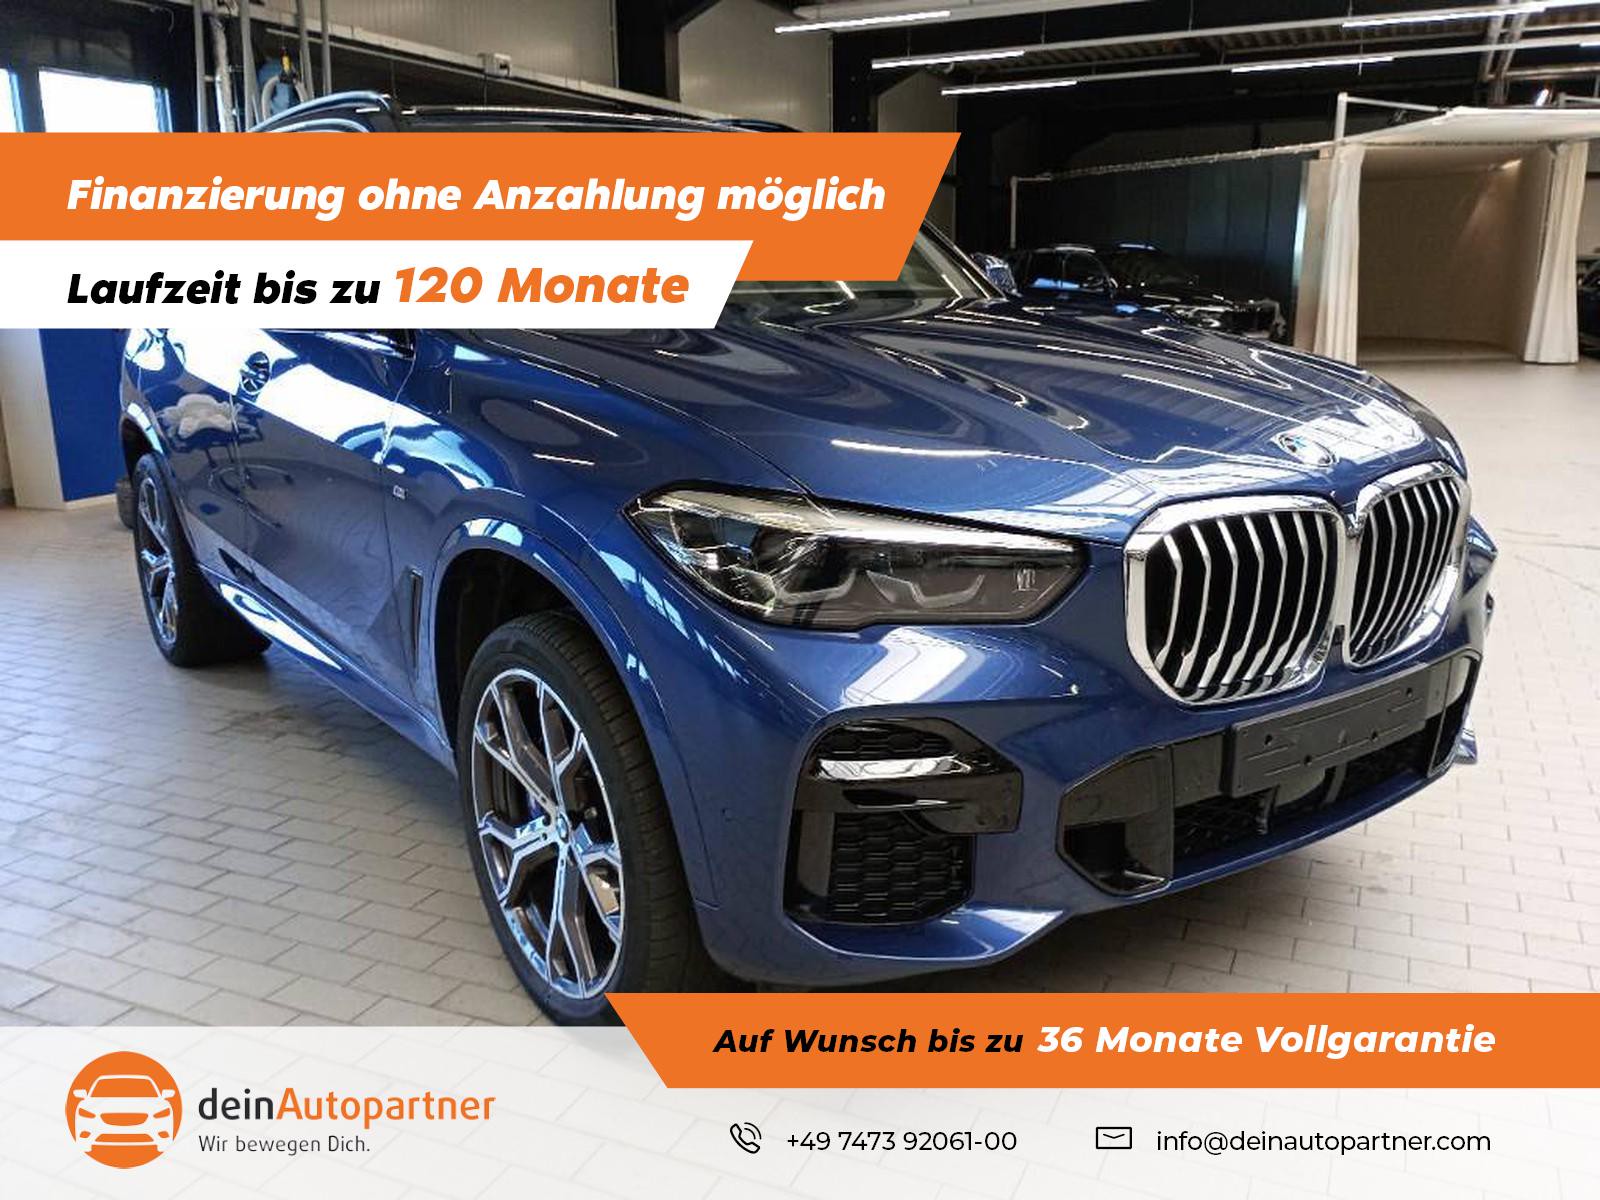 BMW X5 xDrive30d M Sport gebraucht kaufen in Mössingen Preis 67900 eur -  Int.Nr.: 1773